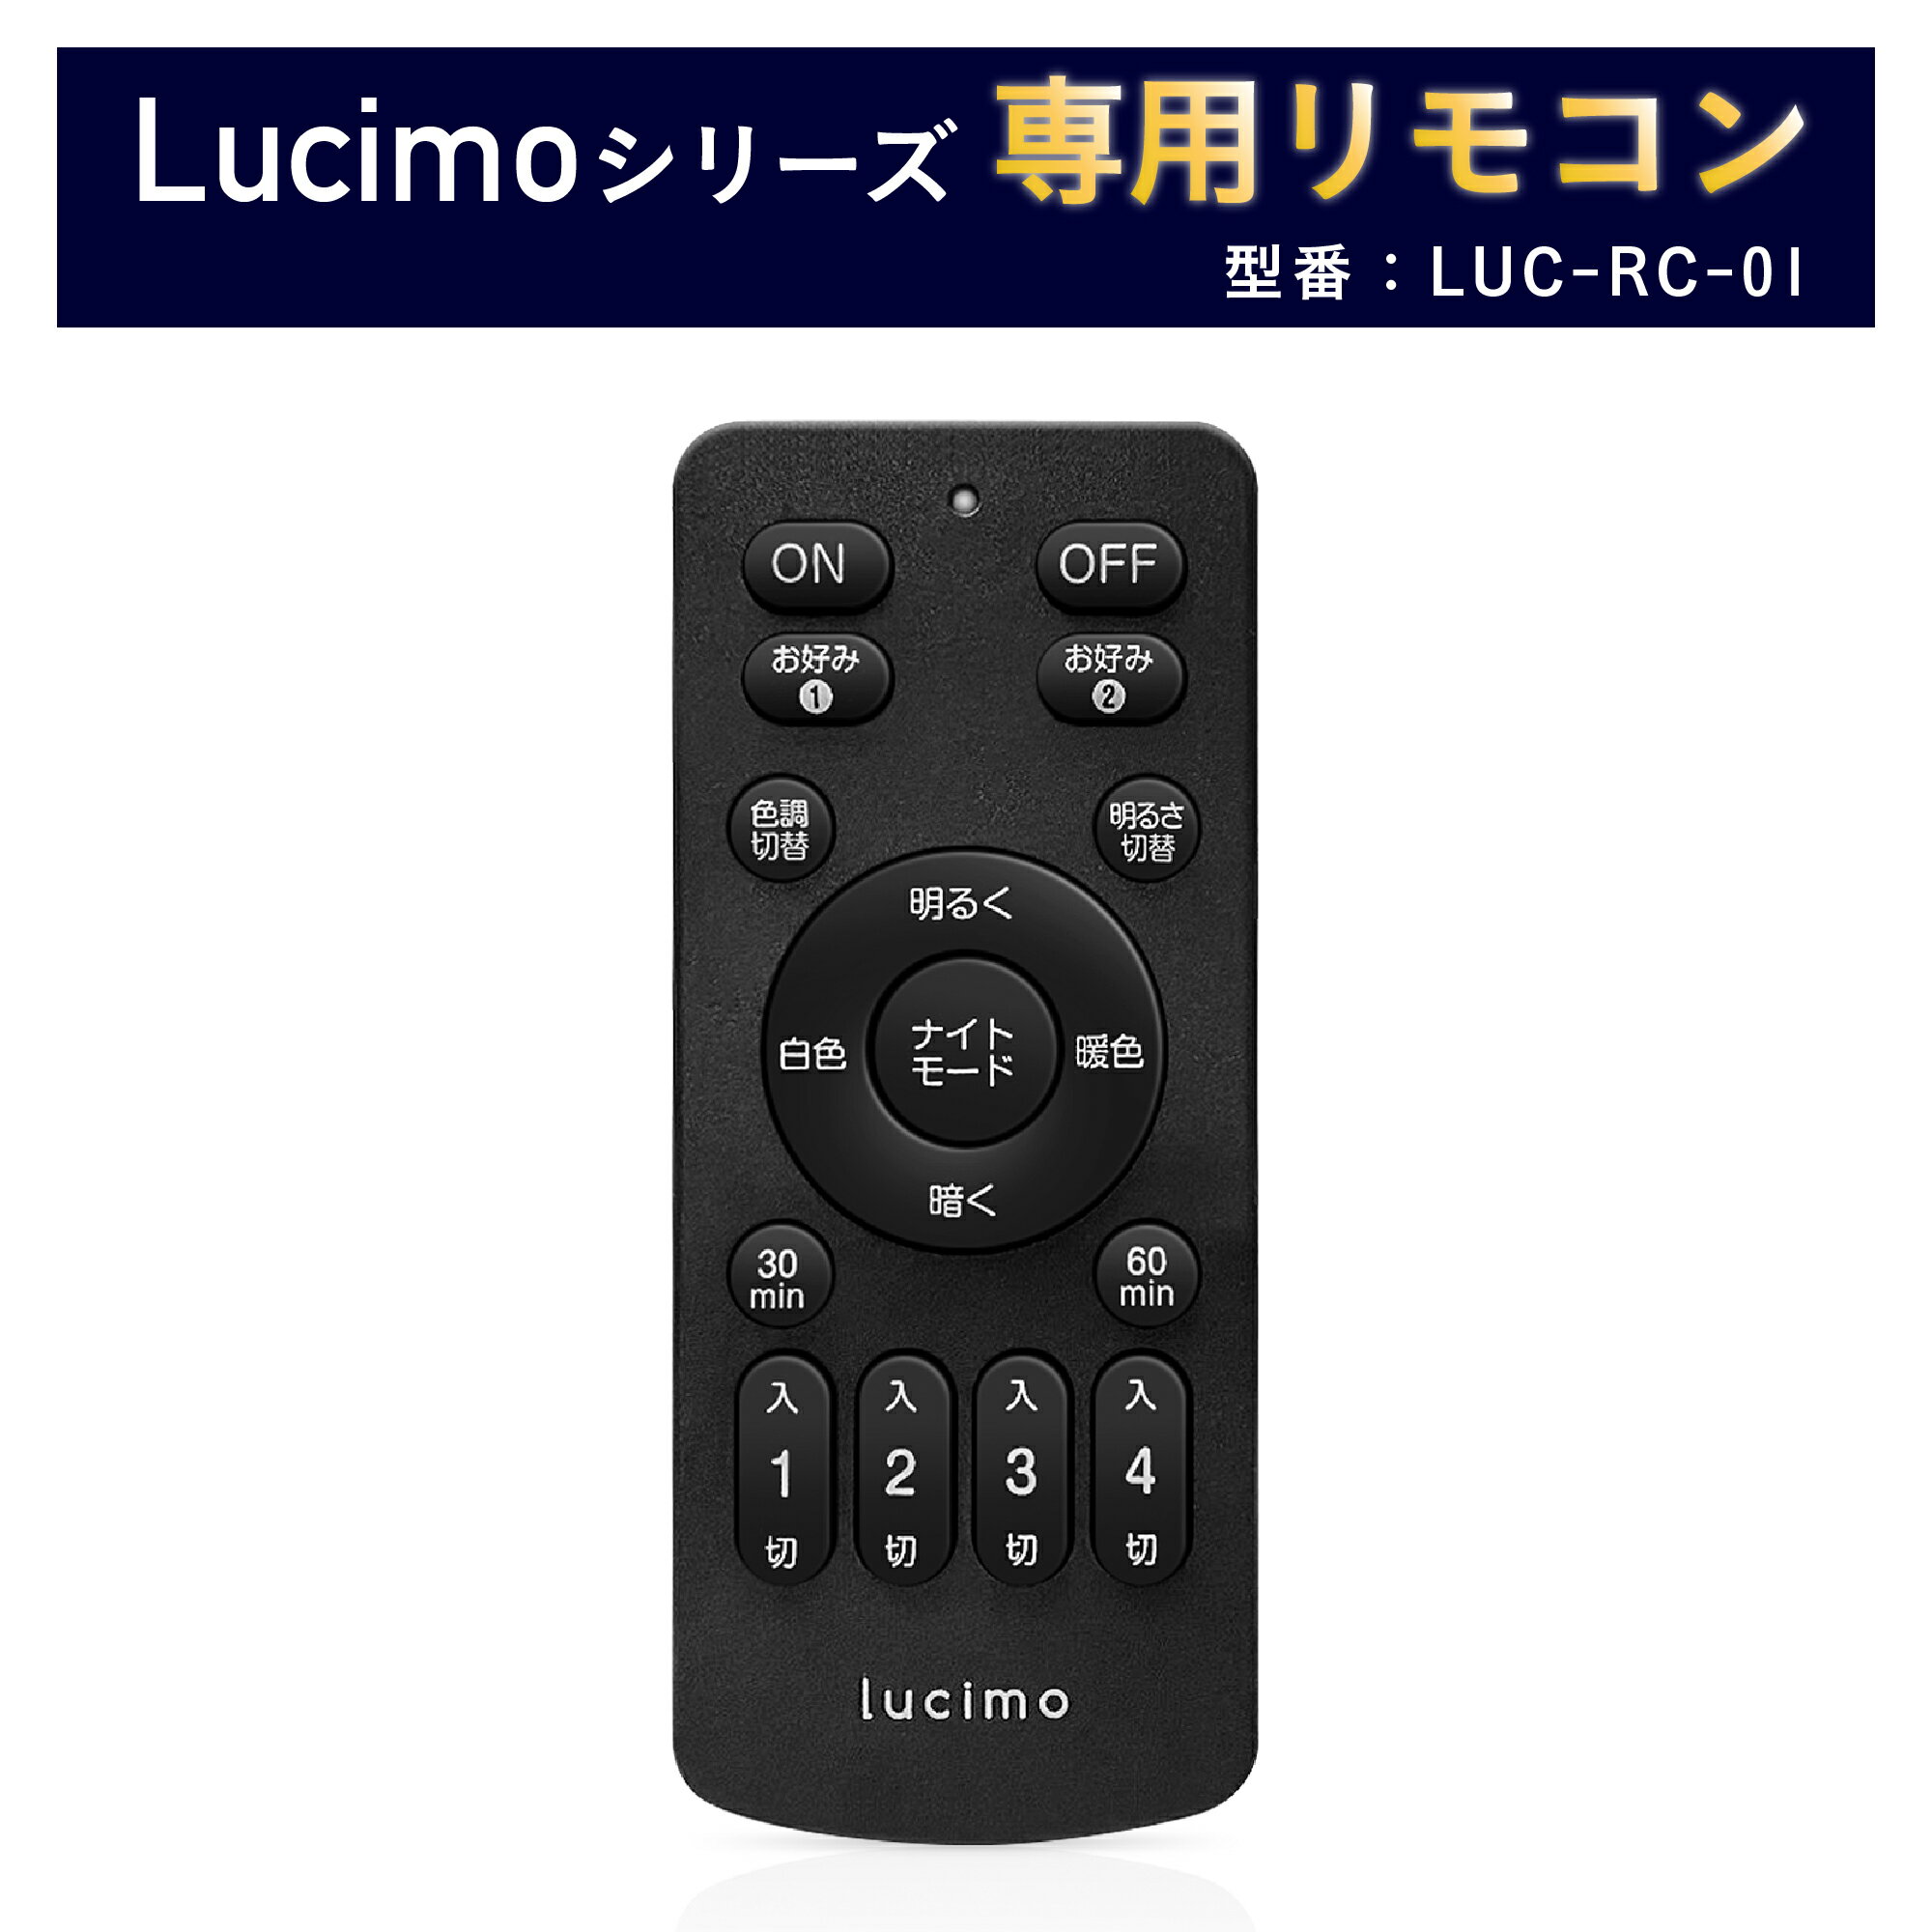 【リモコン単品】リモコン Lucimo ルシモ 照明 用 型番 LUC-RC-01